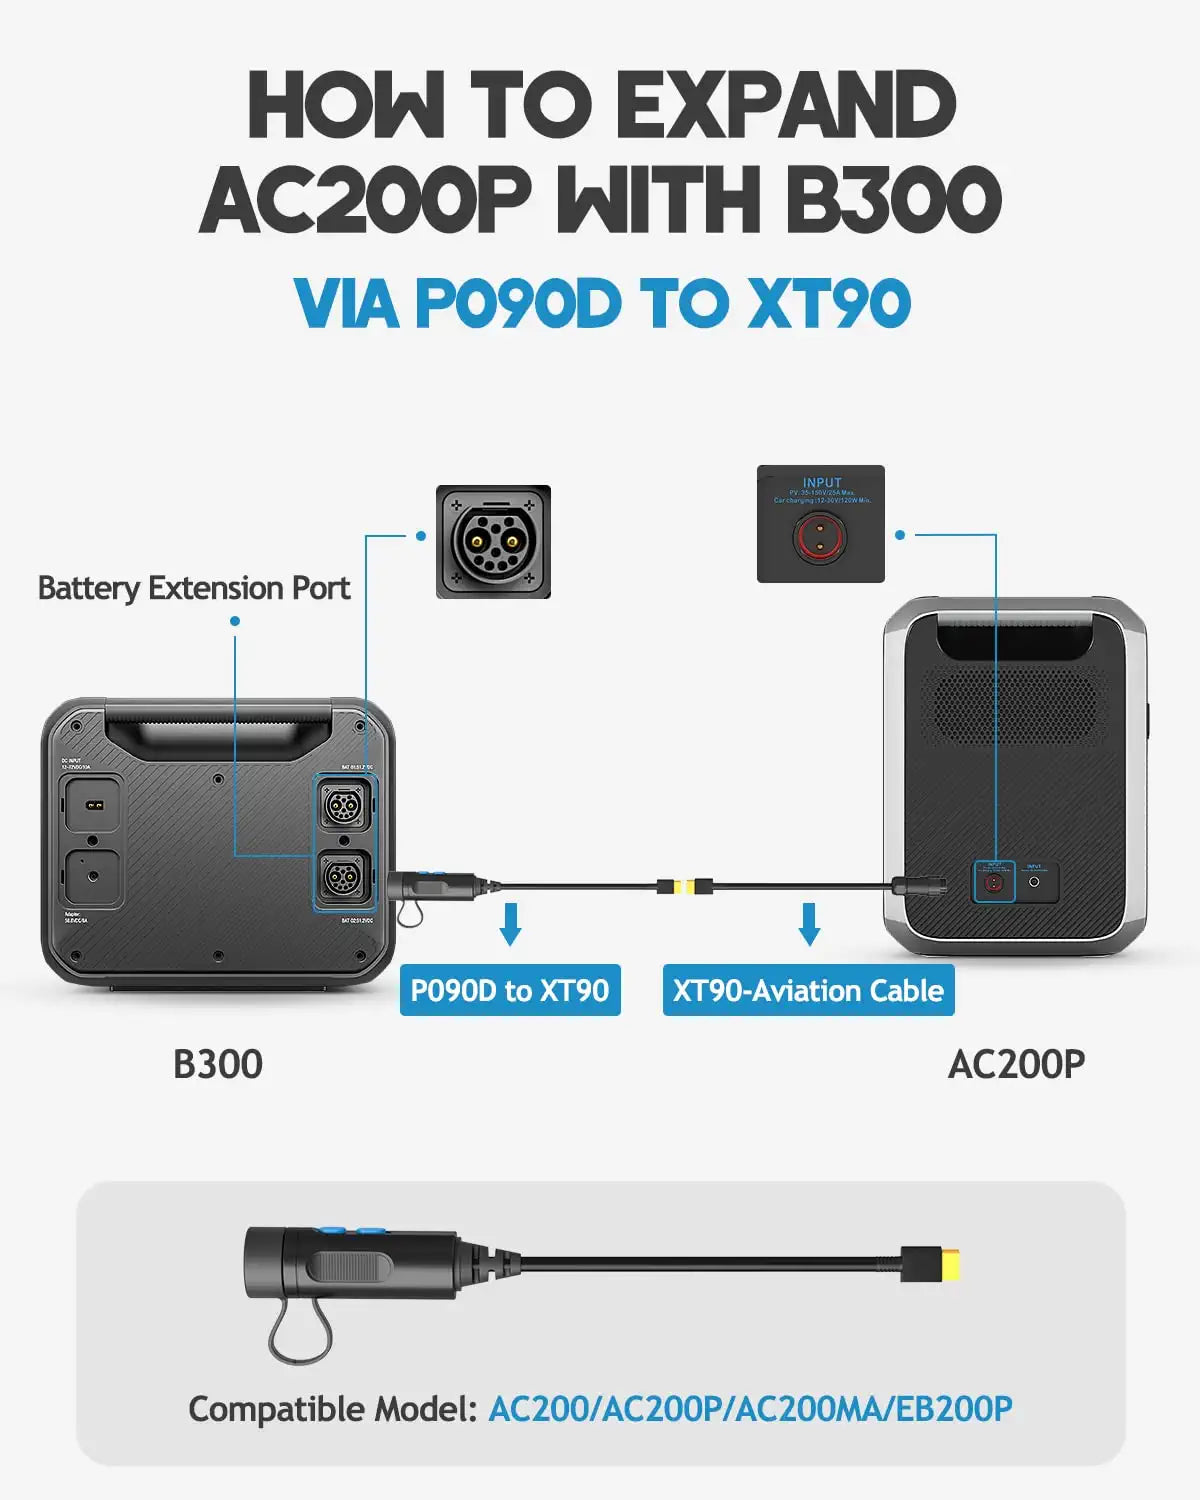 B3O0 ACZOOP Compatible Model: ACZOO